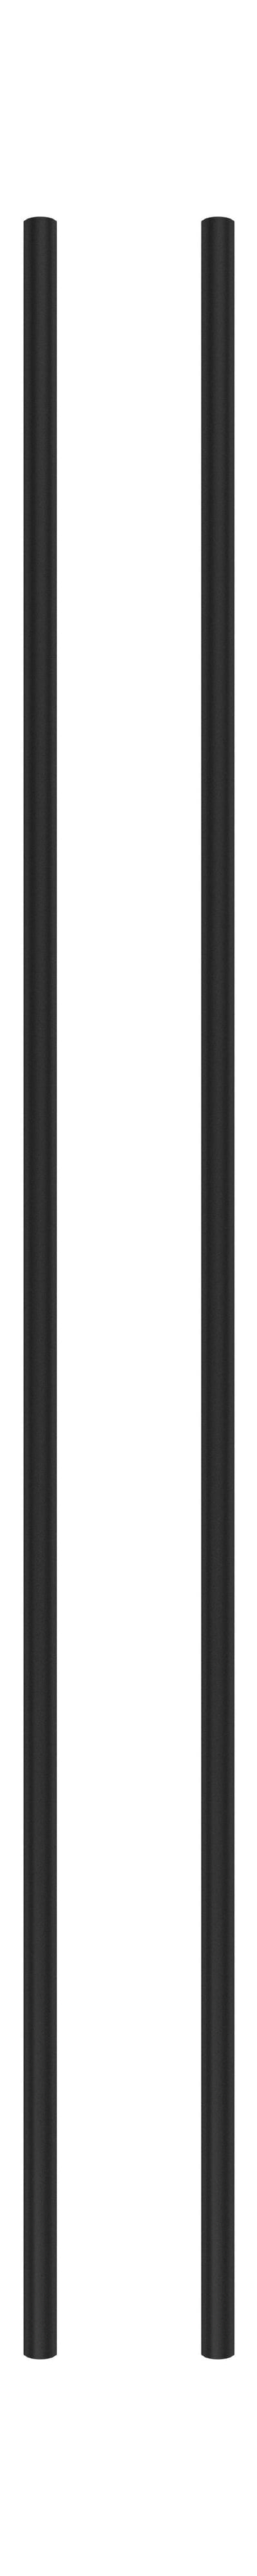 Moebe hyller system/vegghyller 115 cm svart, sett med 2